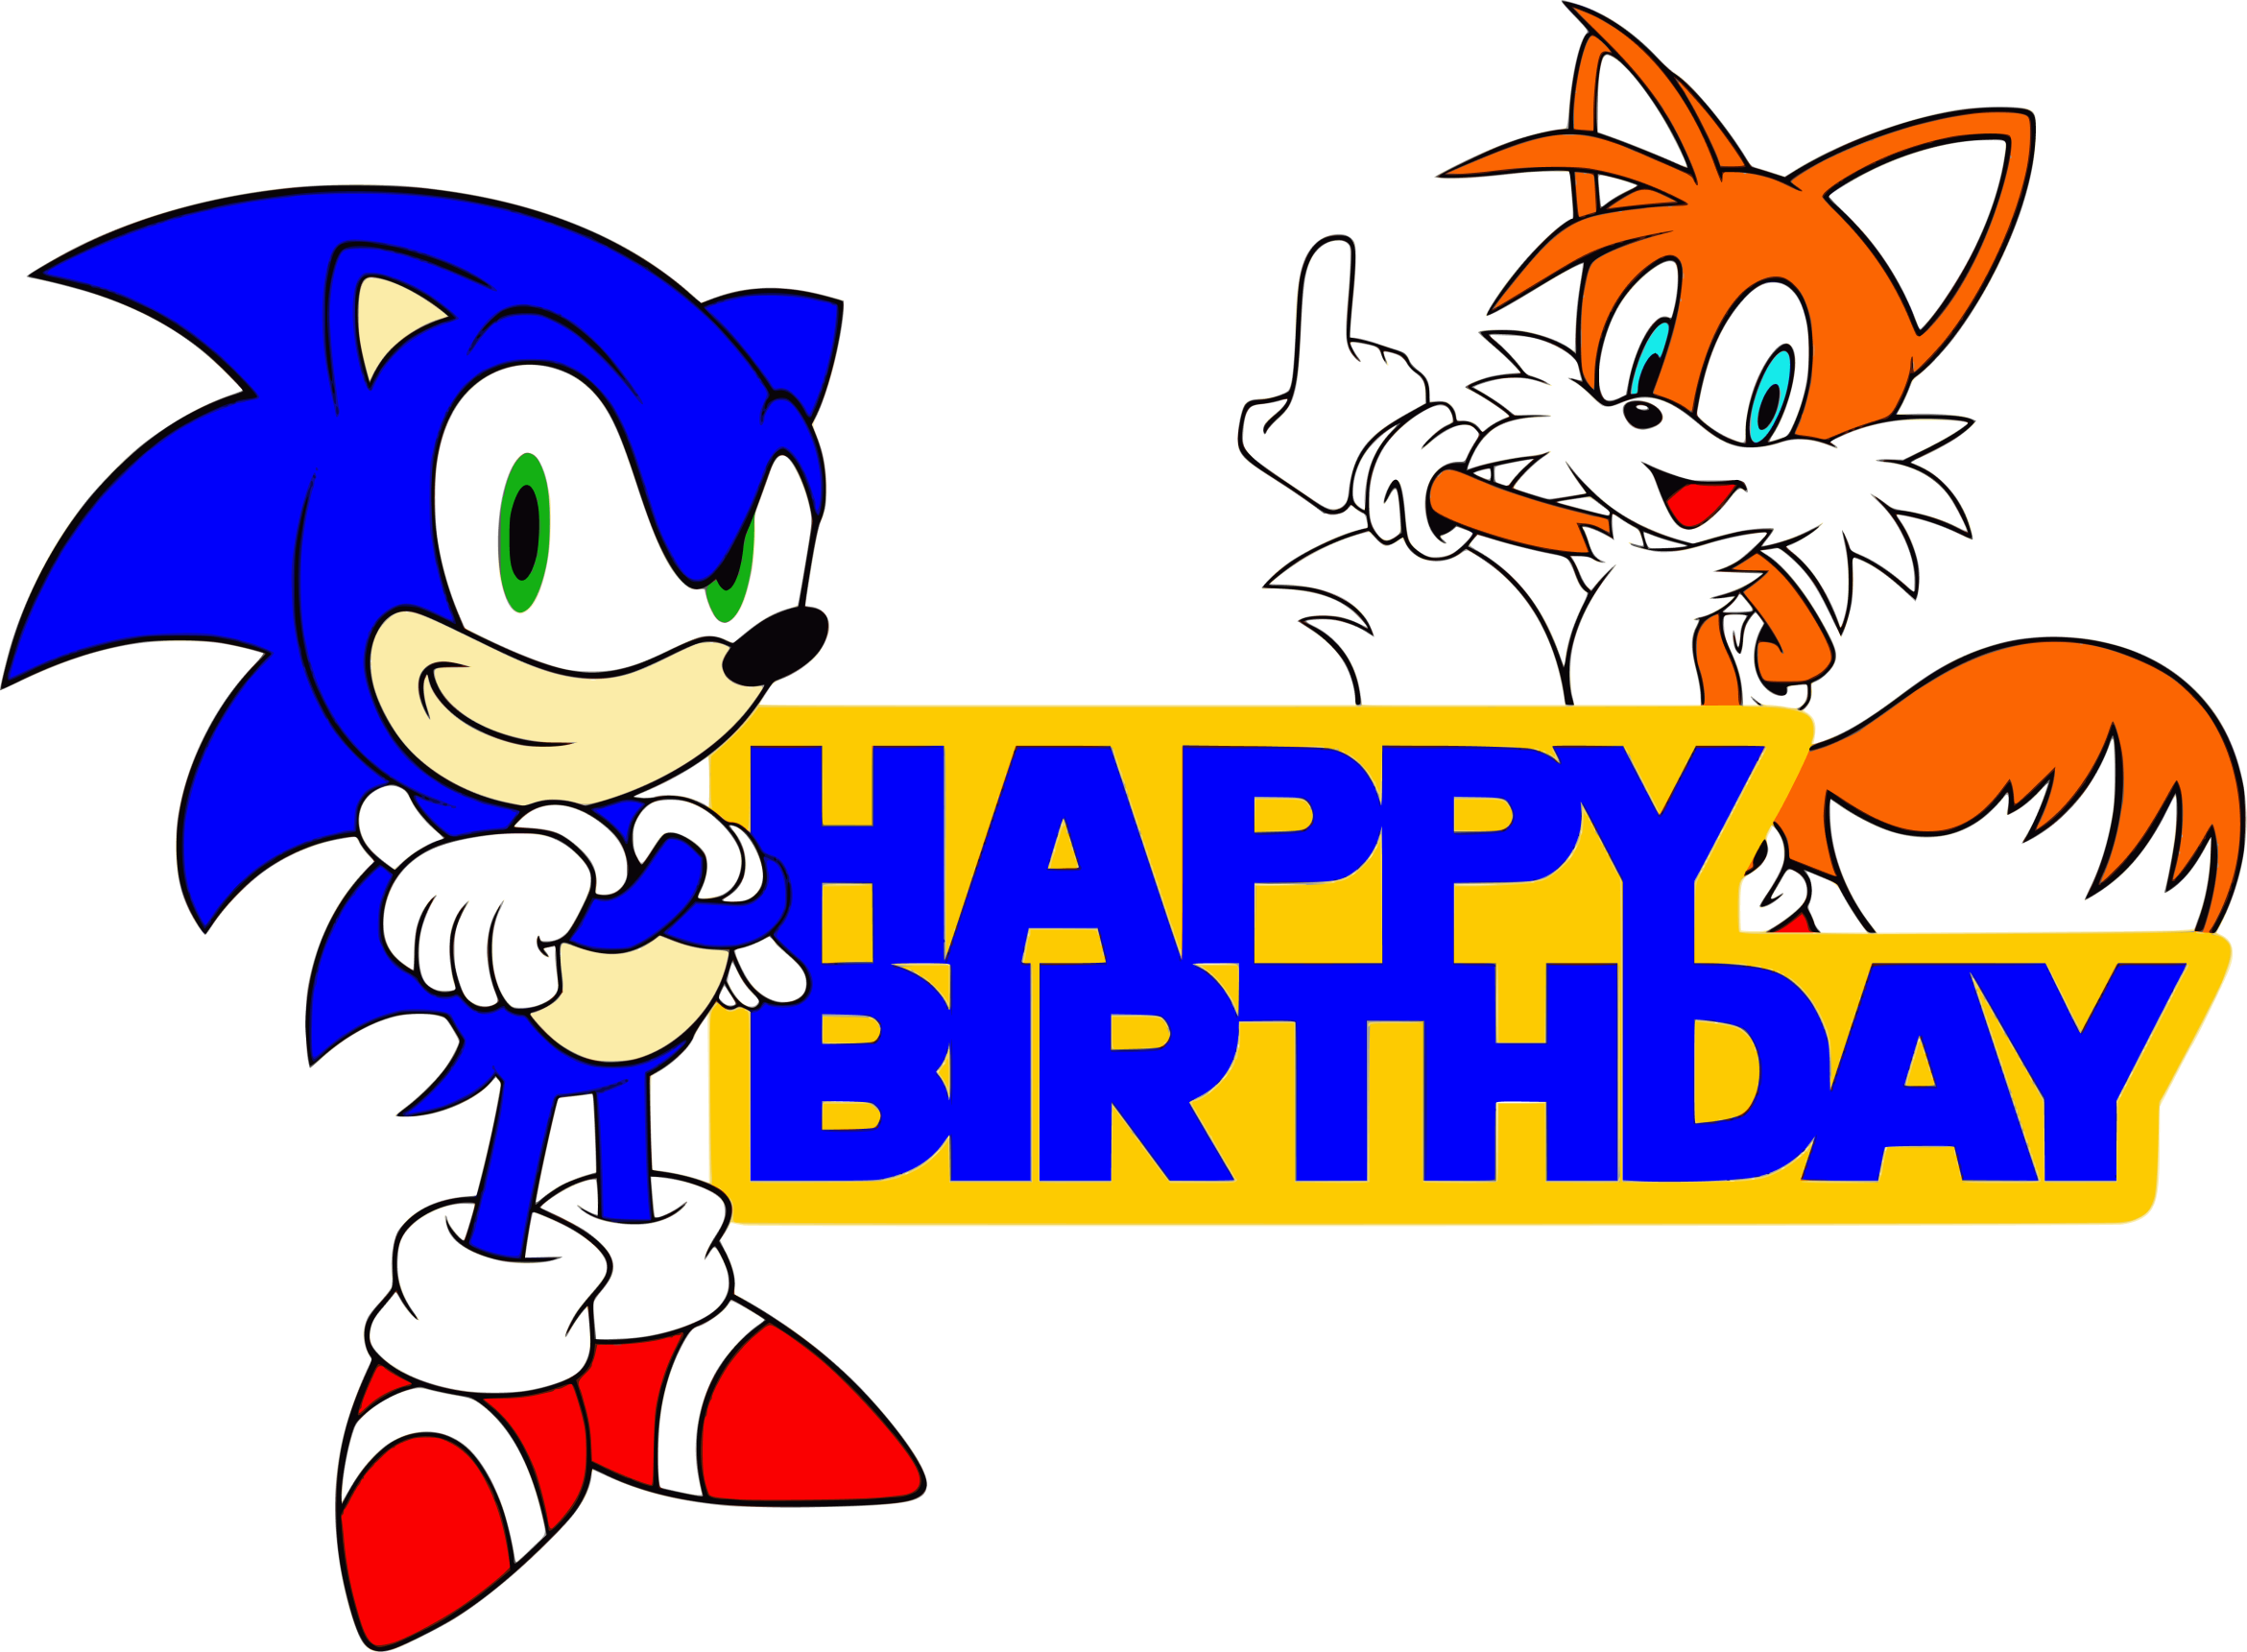 Your Move: Happy Birthday Sonic!